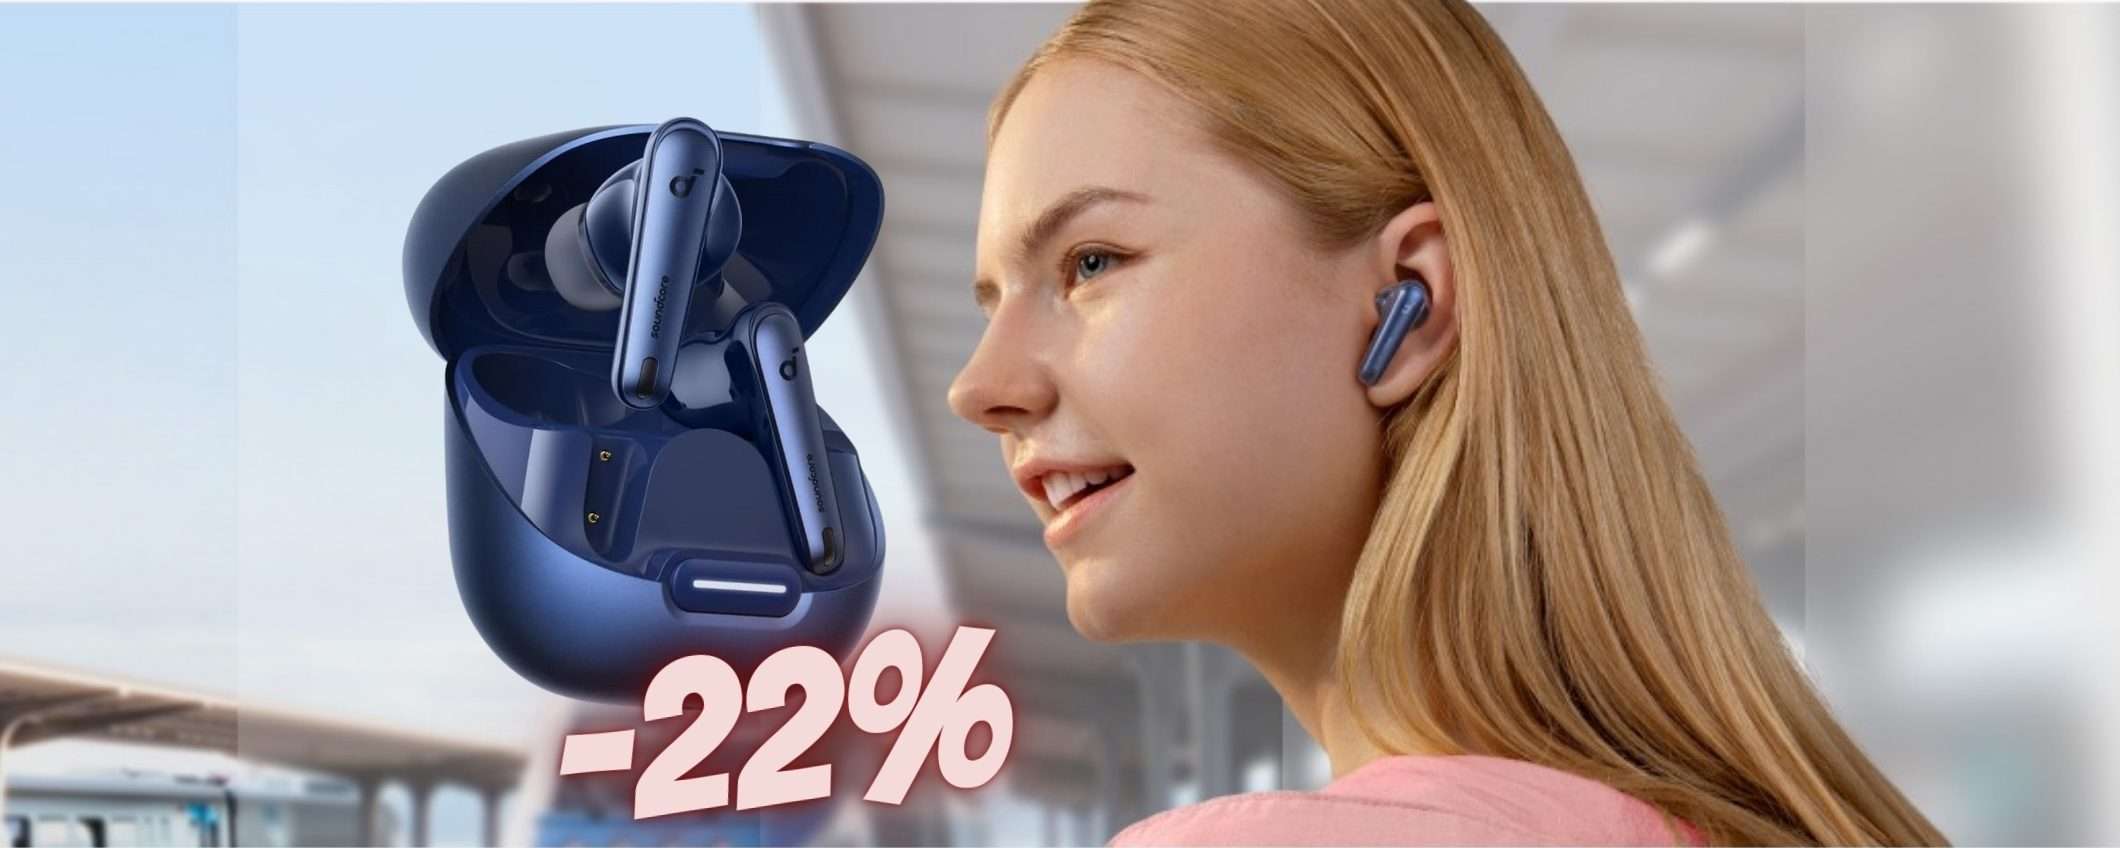 Auricolari wireless Soundcore Liberty 4 al 22%: PREZZACCIO Amazon